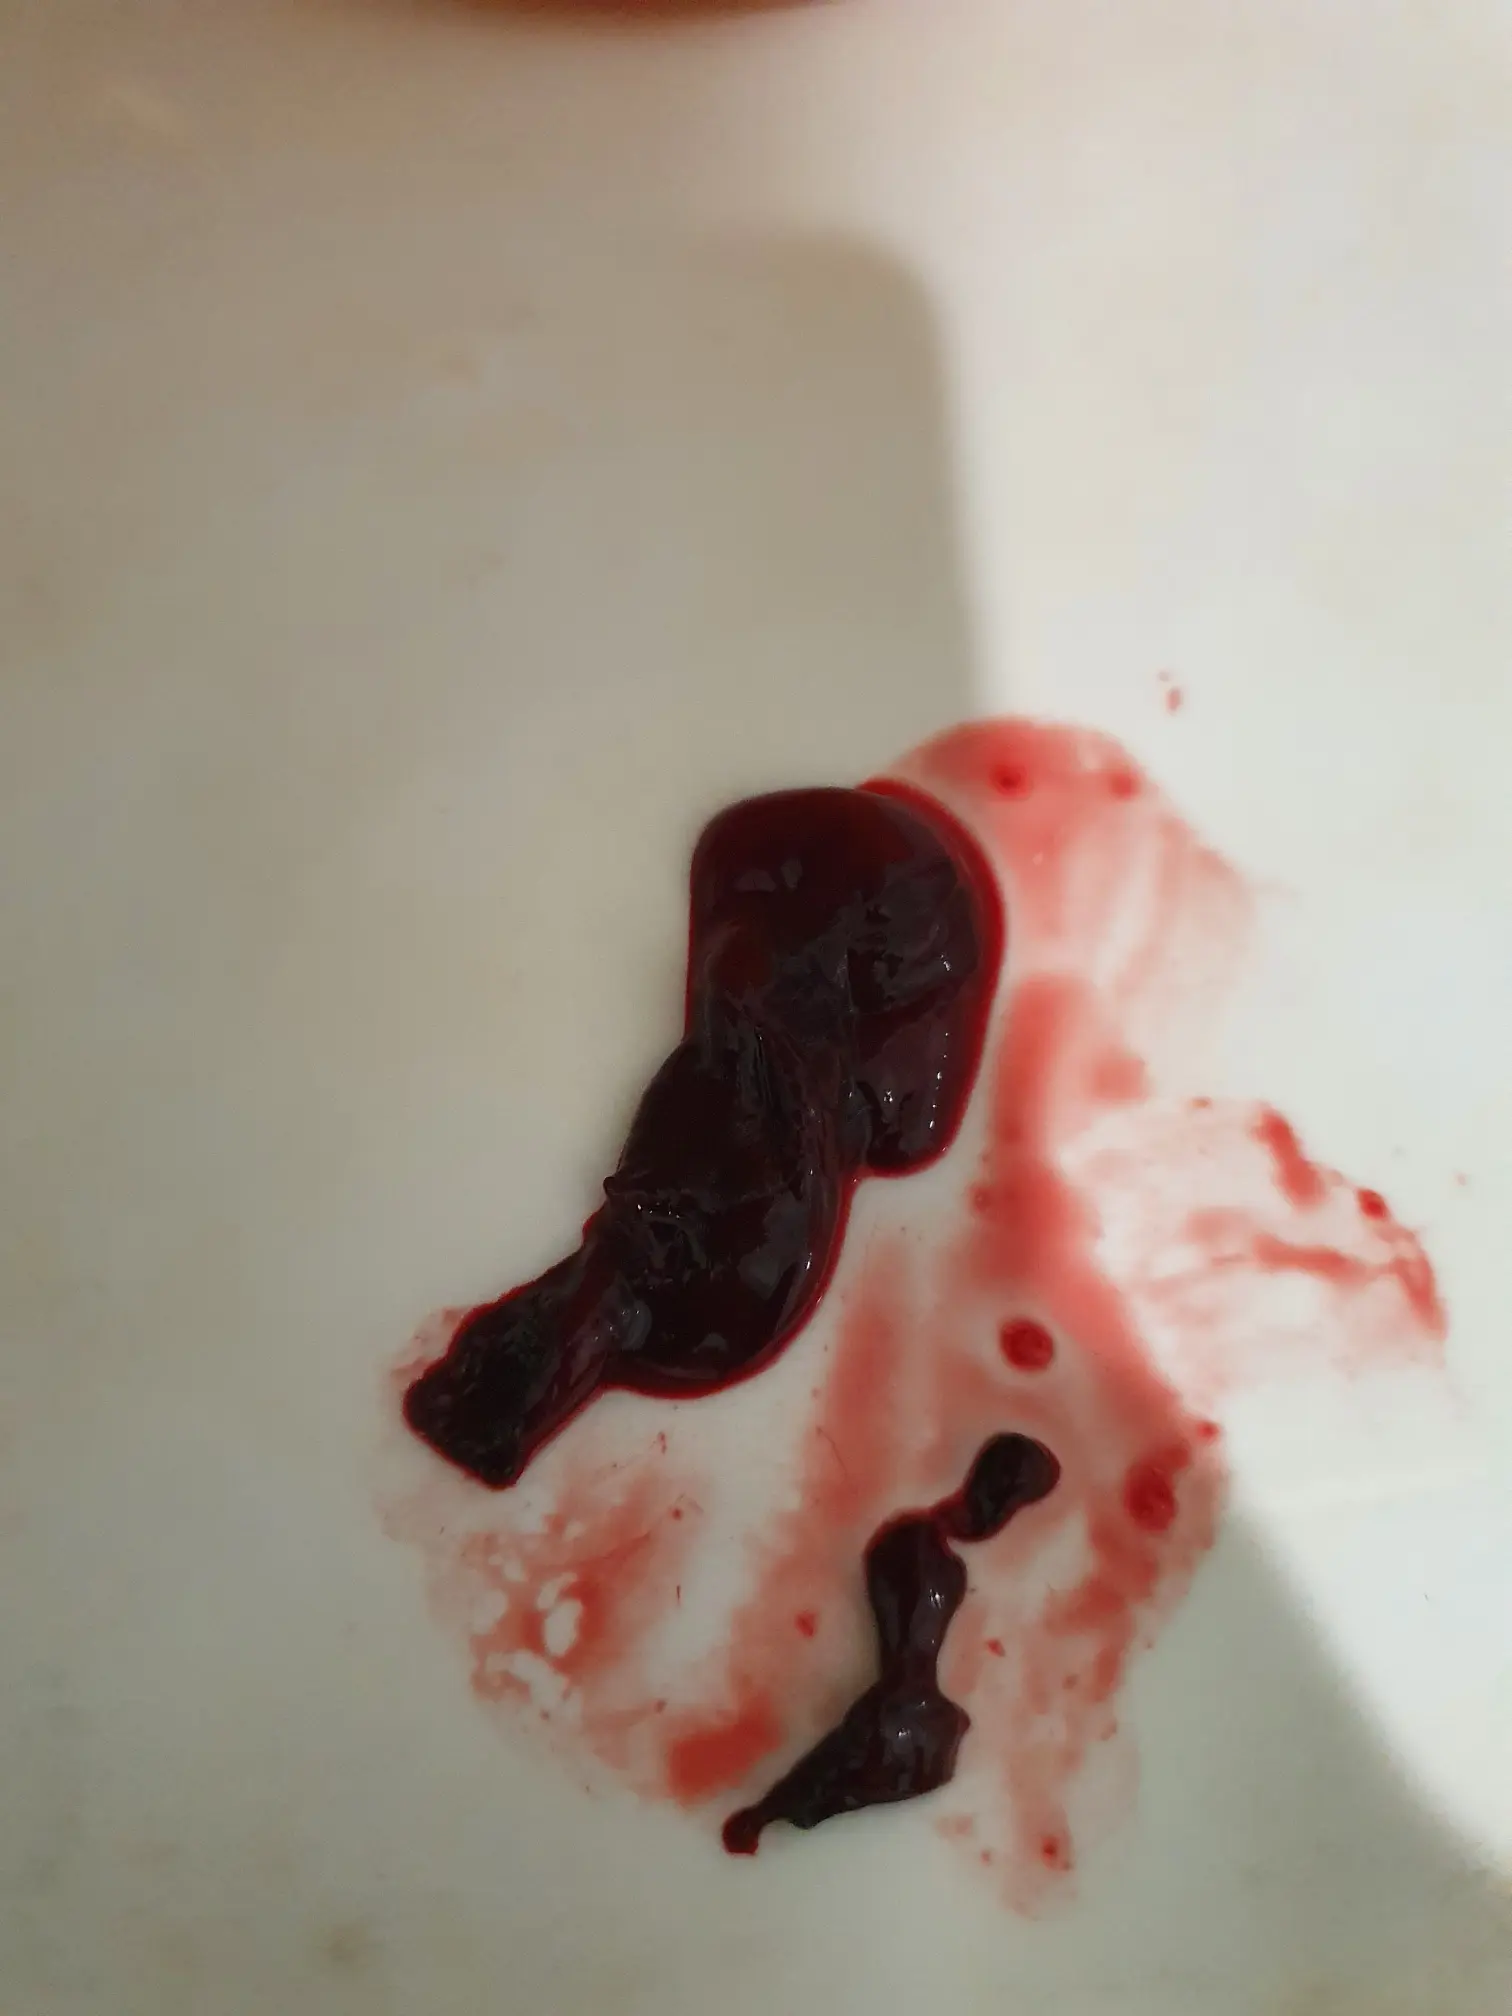 сгустки крови в сперме мужчин фото 42